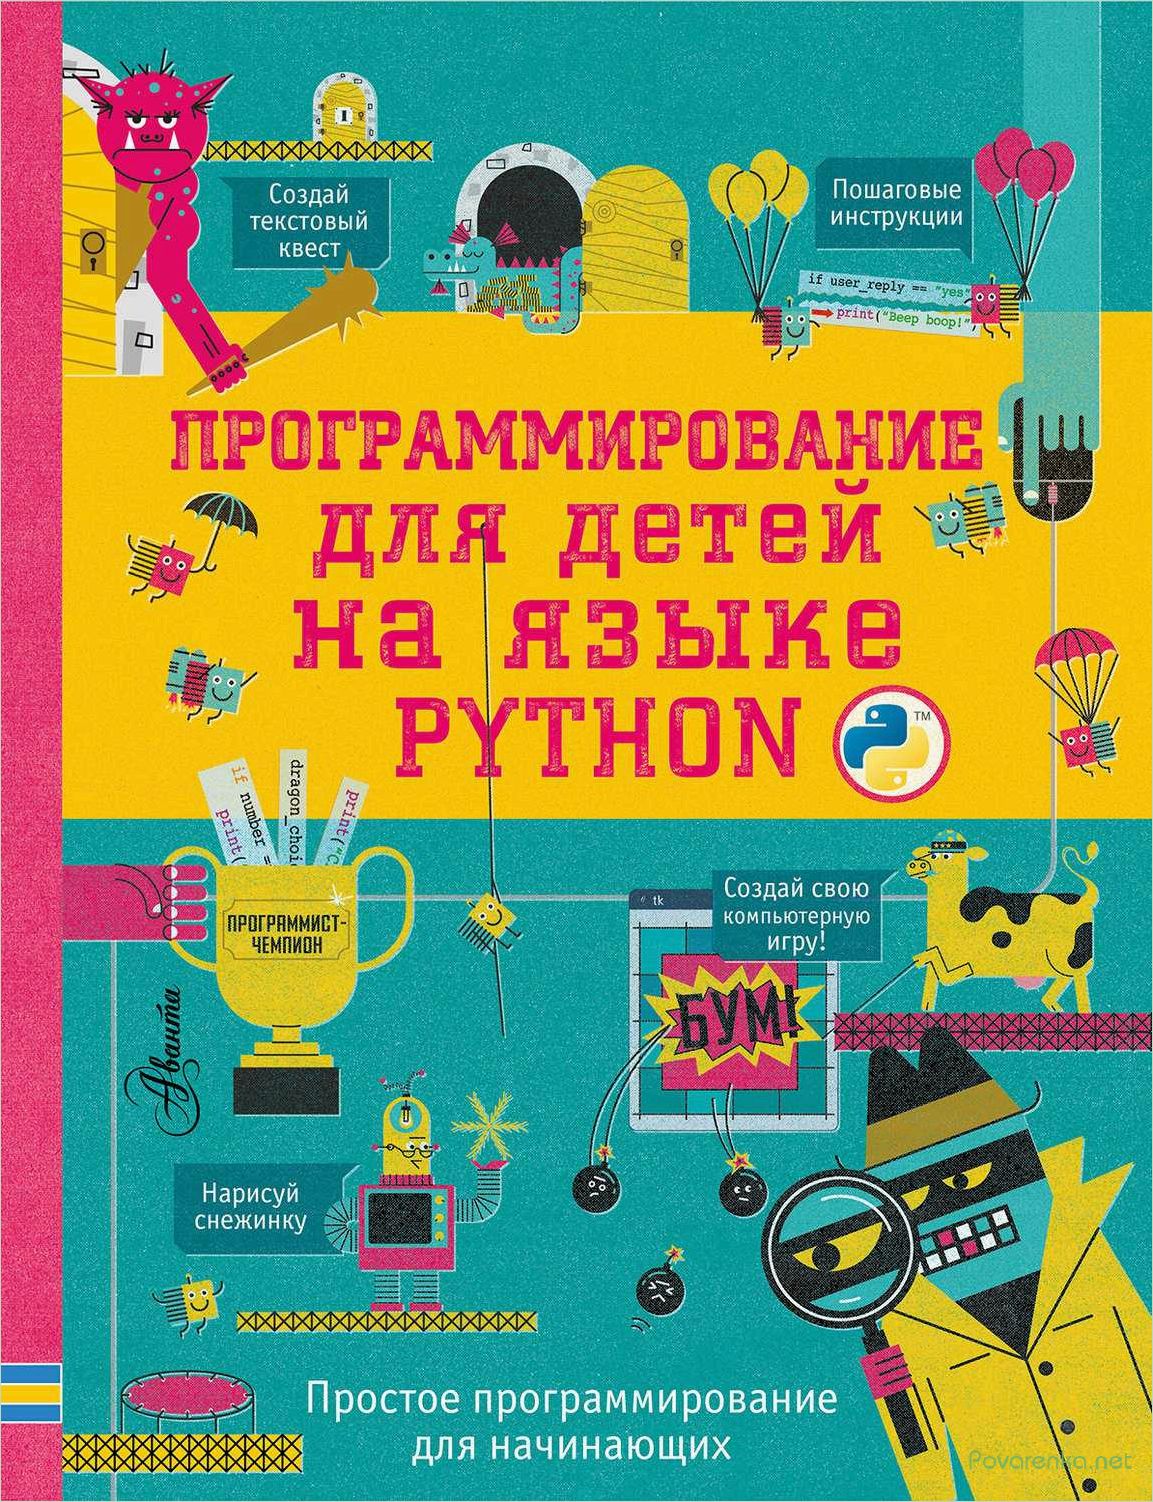 Программирование Python для подростков